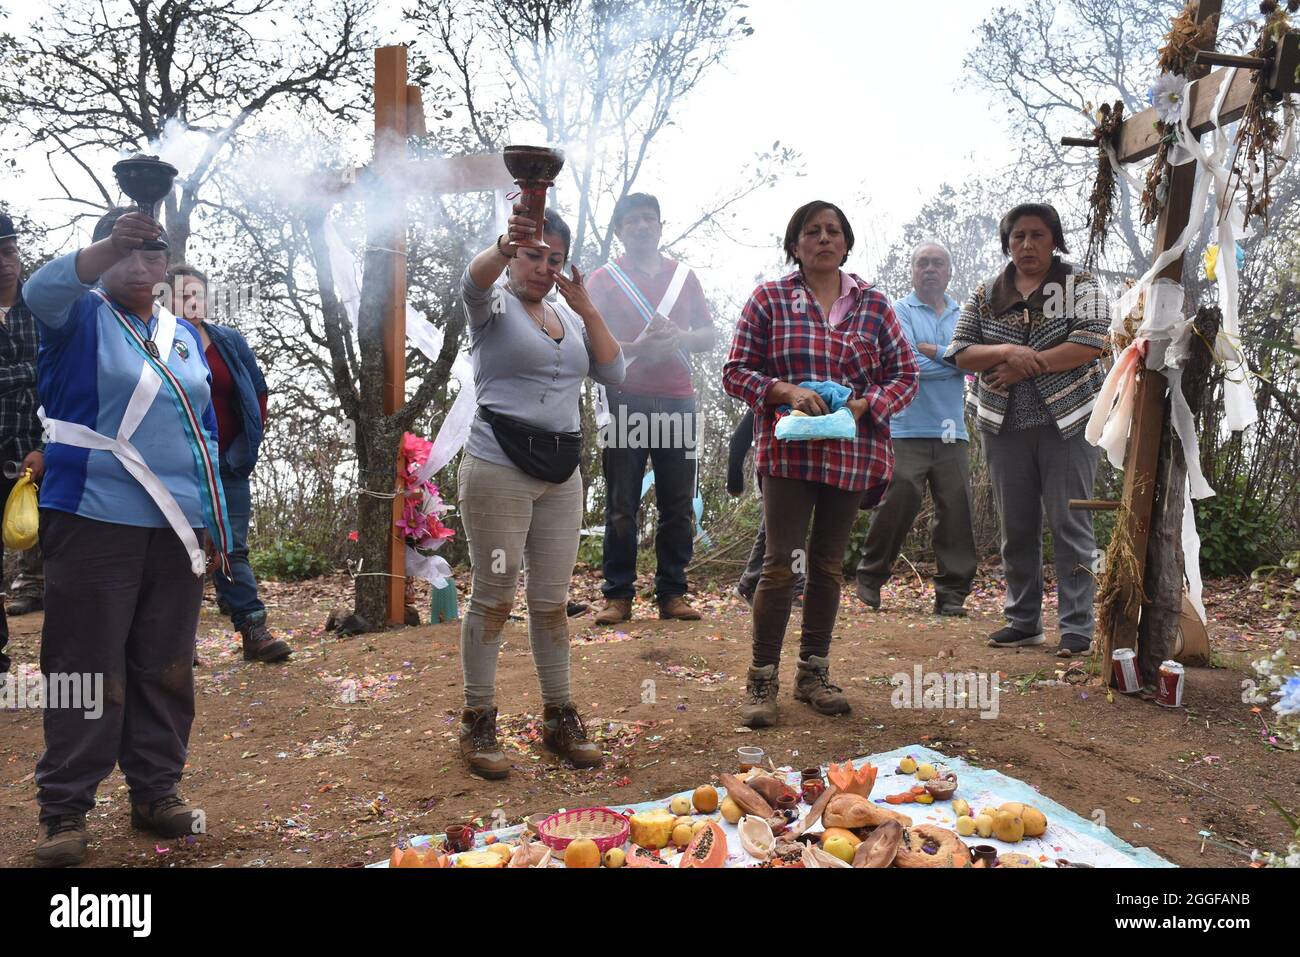 I Graniceros, i tradizionali sciamani messicani, eseguono un petición de lluvia, un rituale per petizione degli dei indigeni per la pioggia. Foto Stock